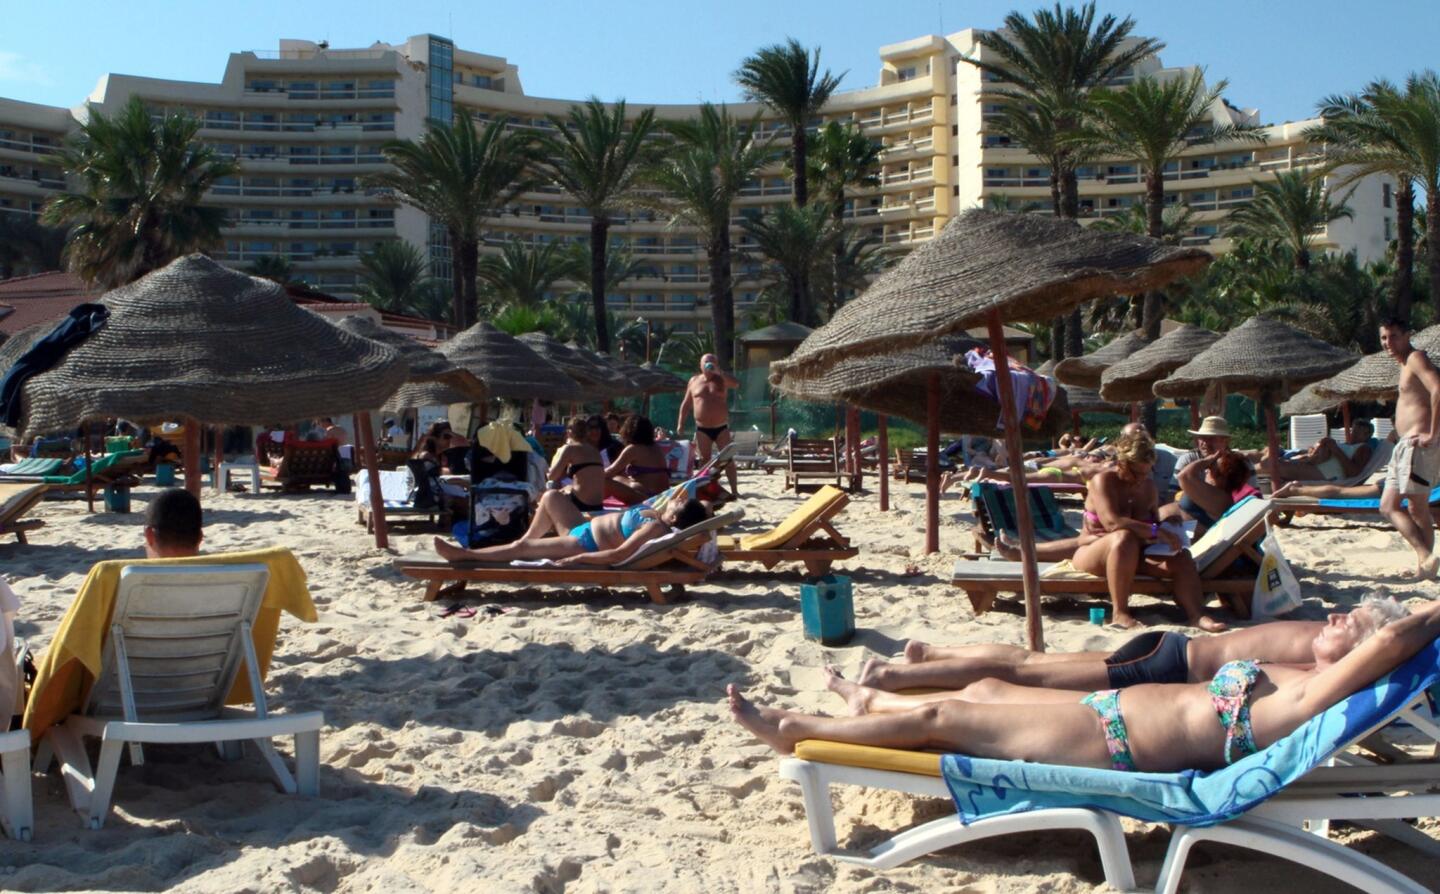 Terror attack at beach resort in Tunisia